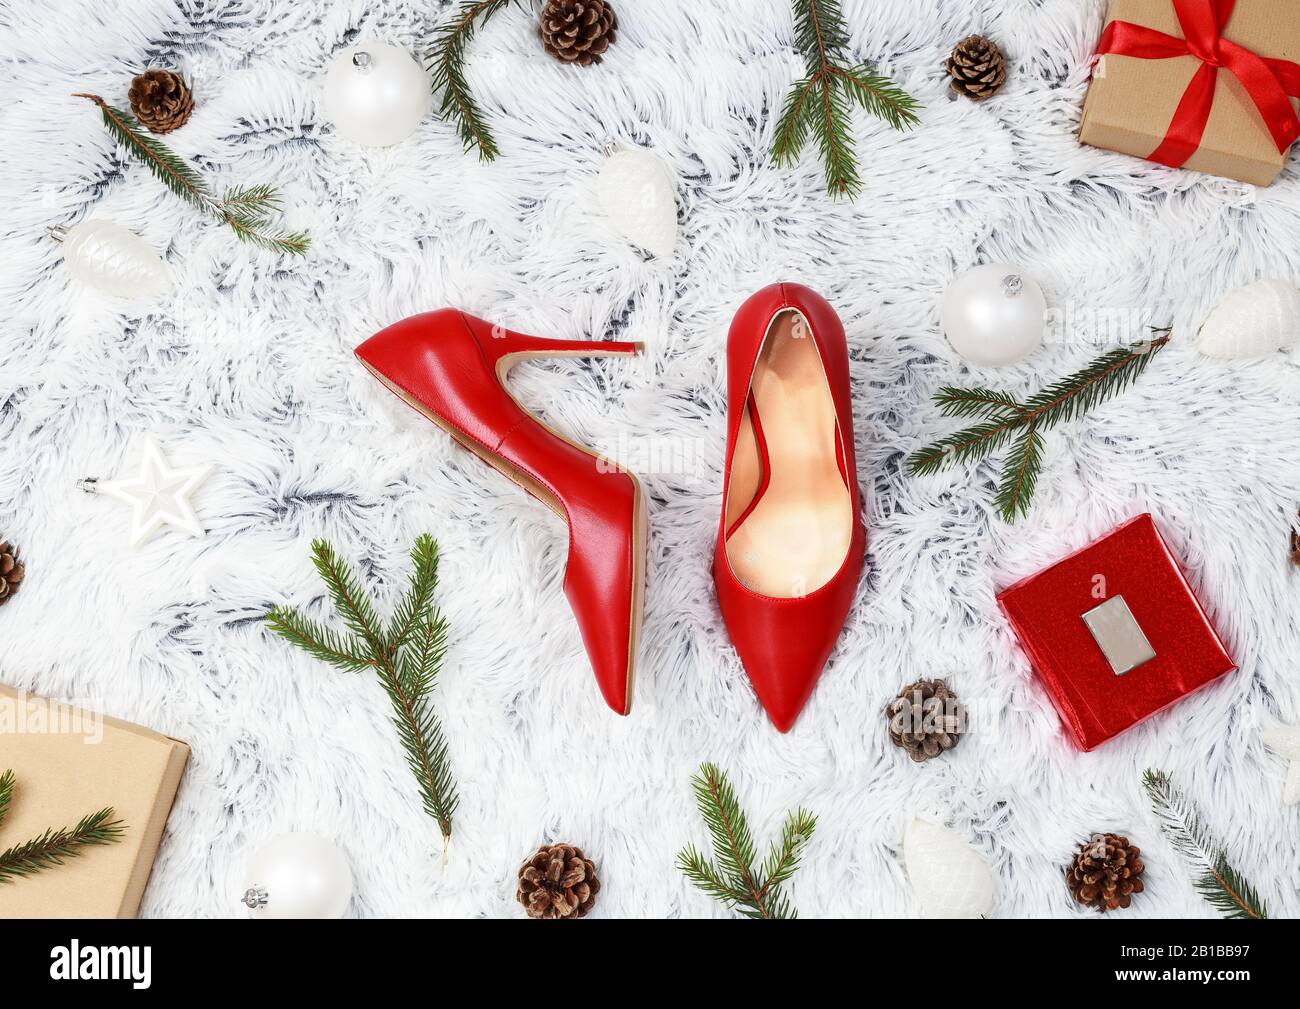 Chaussures à talons hauts rouges pour femme sur fond blanc. Concept cadeau de Noël avec place pour le texte. Banque D'Images